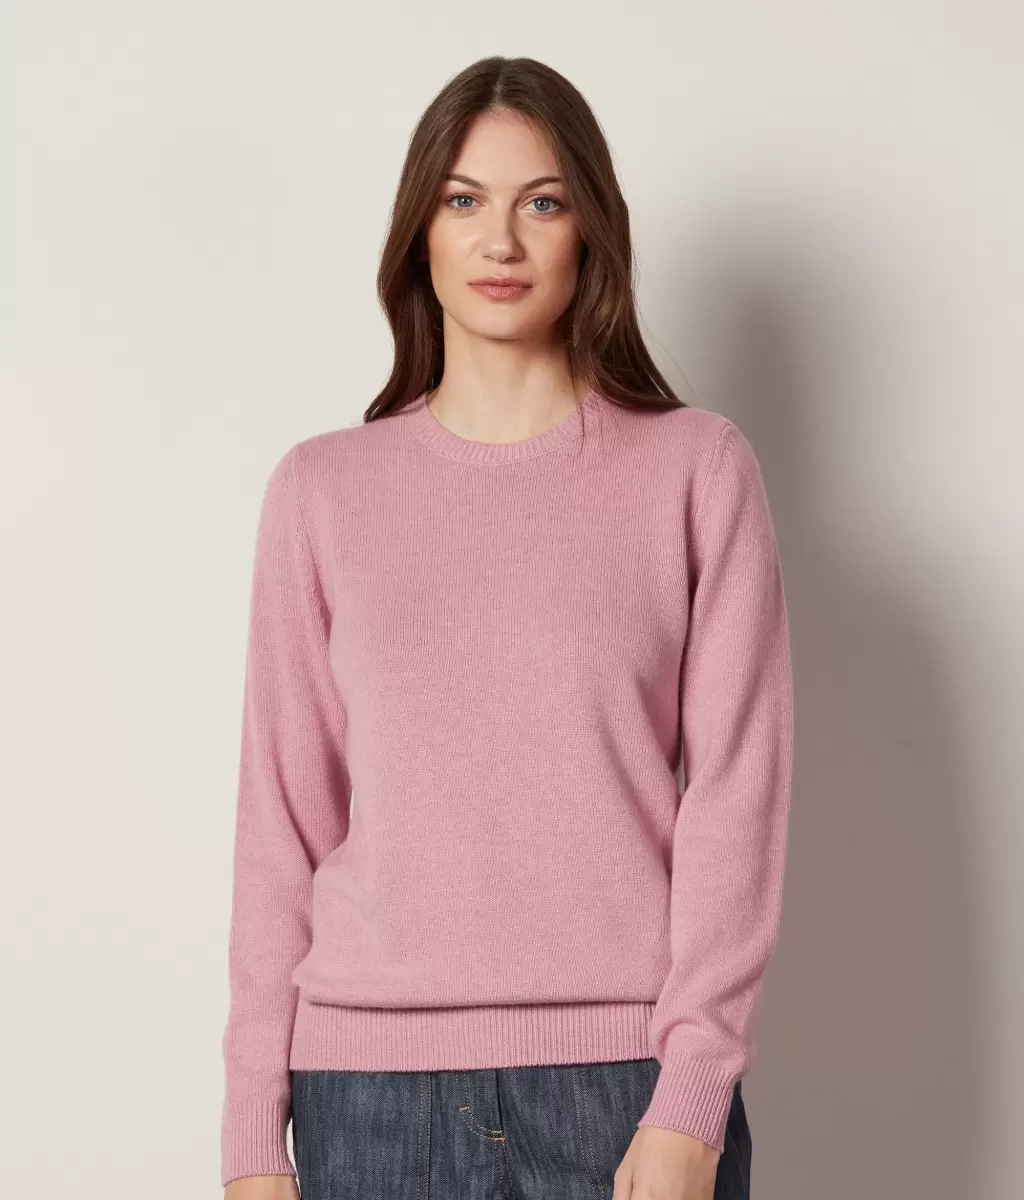 Swetry Z Okrągłym Dekoltem Pulower Z Kaszmiru Ultrasoft Pale_Pink Falconeri Kobieta - 1